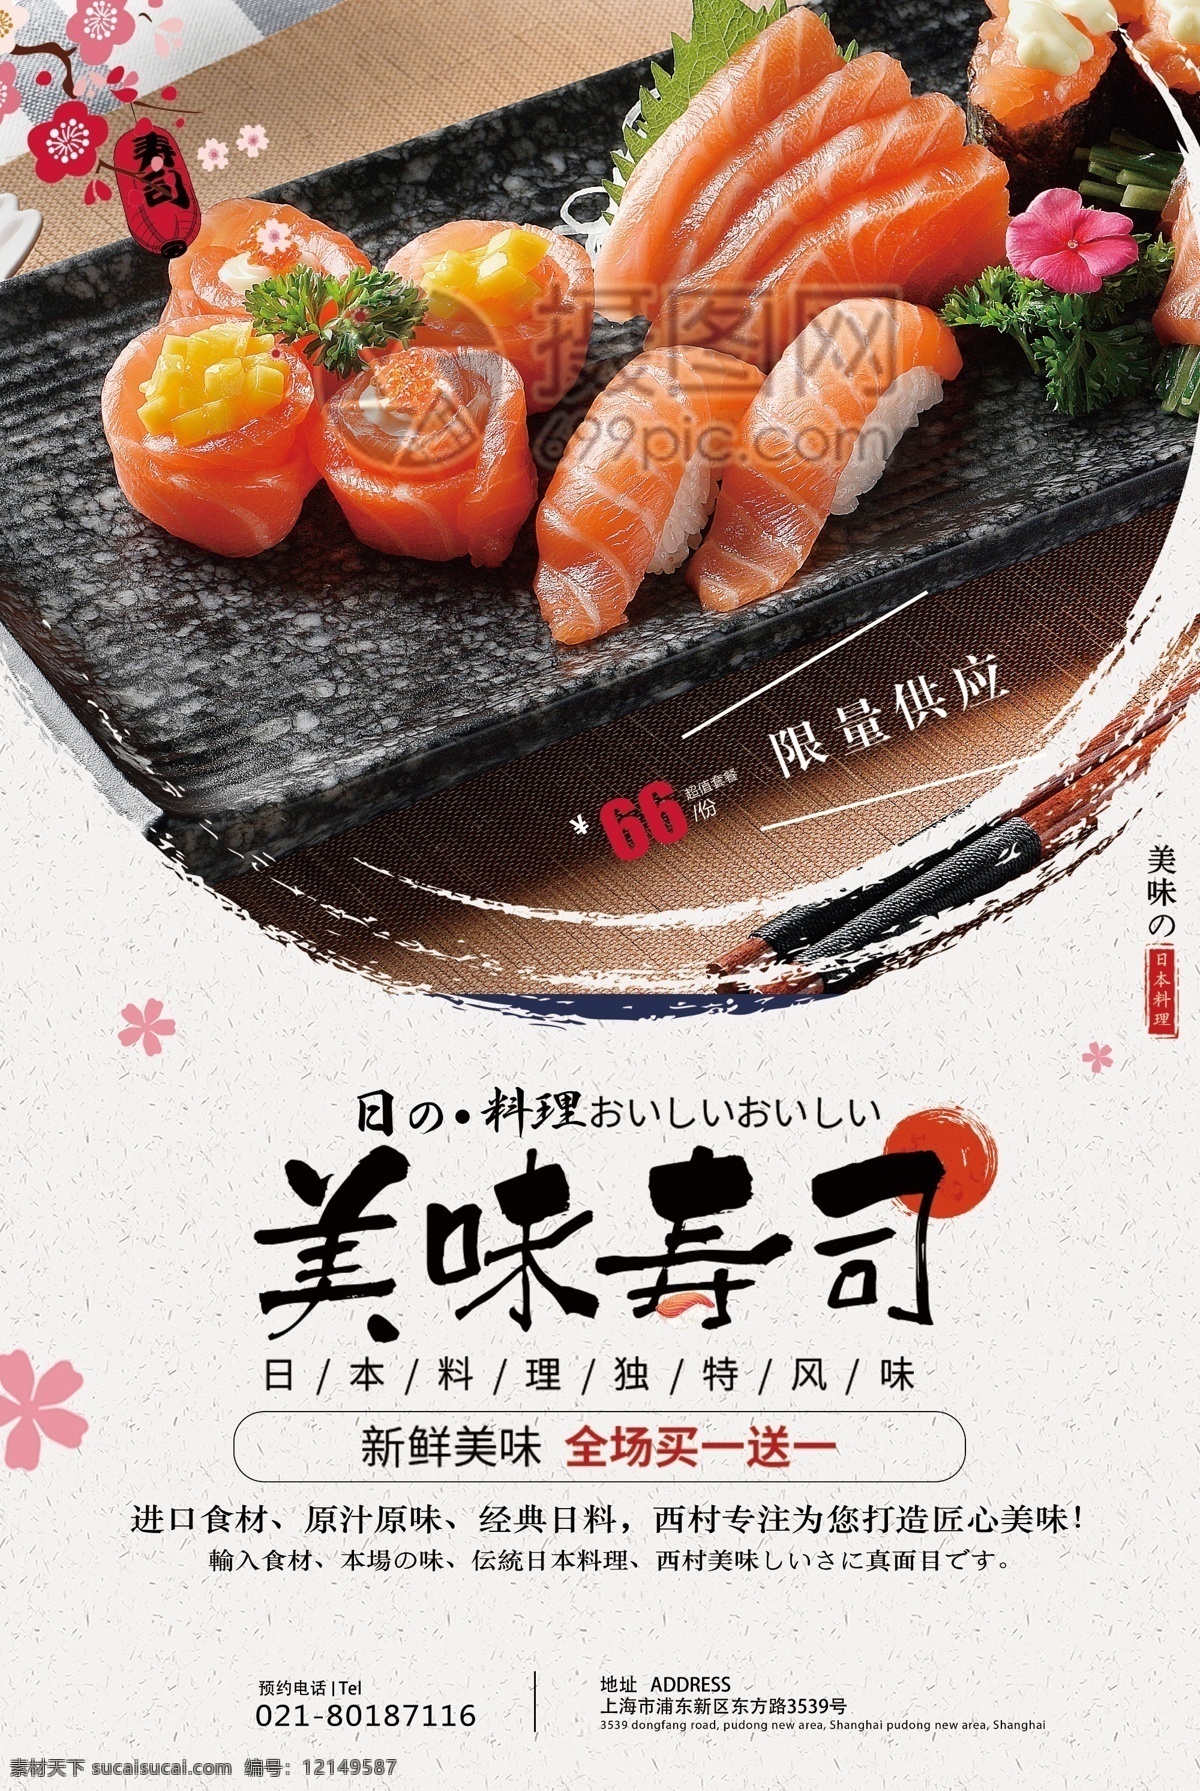 日本 寿司 食物 海报 日本寿司 寿司海报 寿司促销 生鱼片 美食 美味 促销海报 日本寿司海报 美食海报 食品海报 食品 日料美食